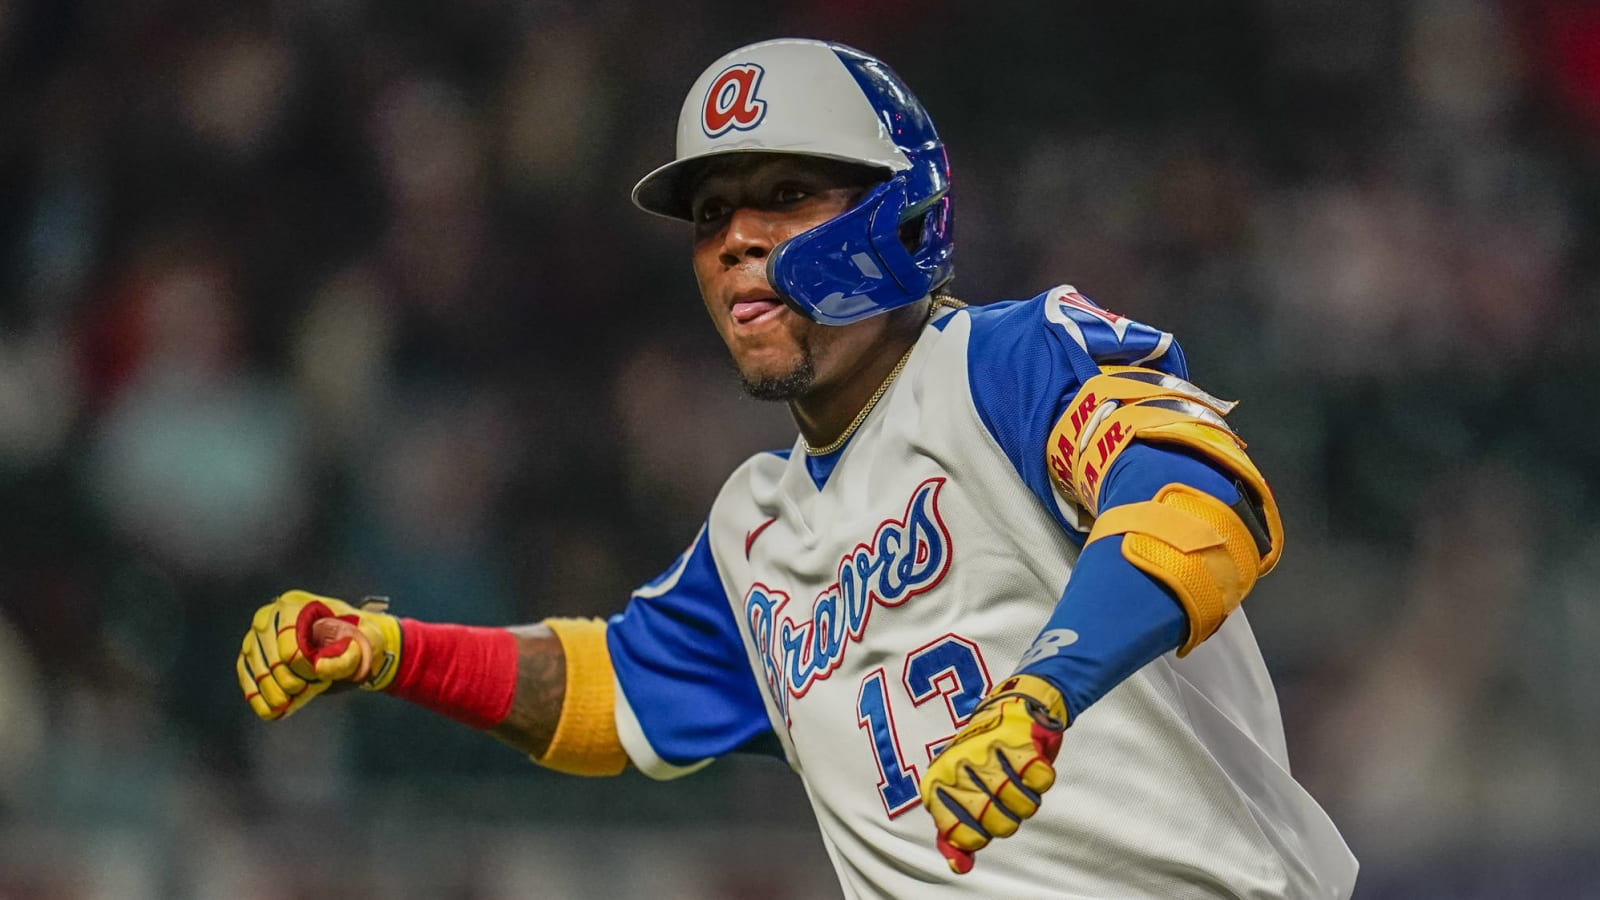 Braves: Ronald Acuña Jr. injury update